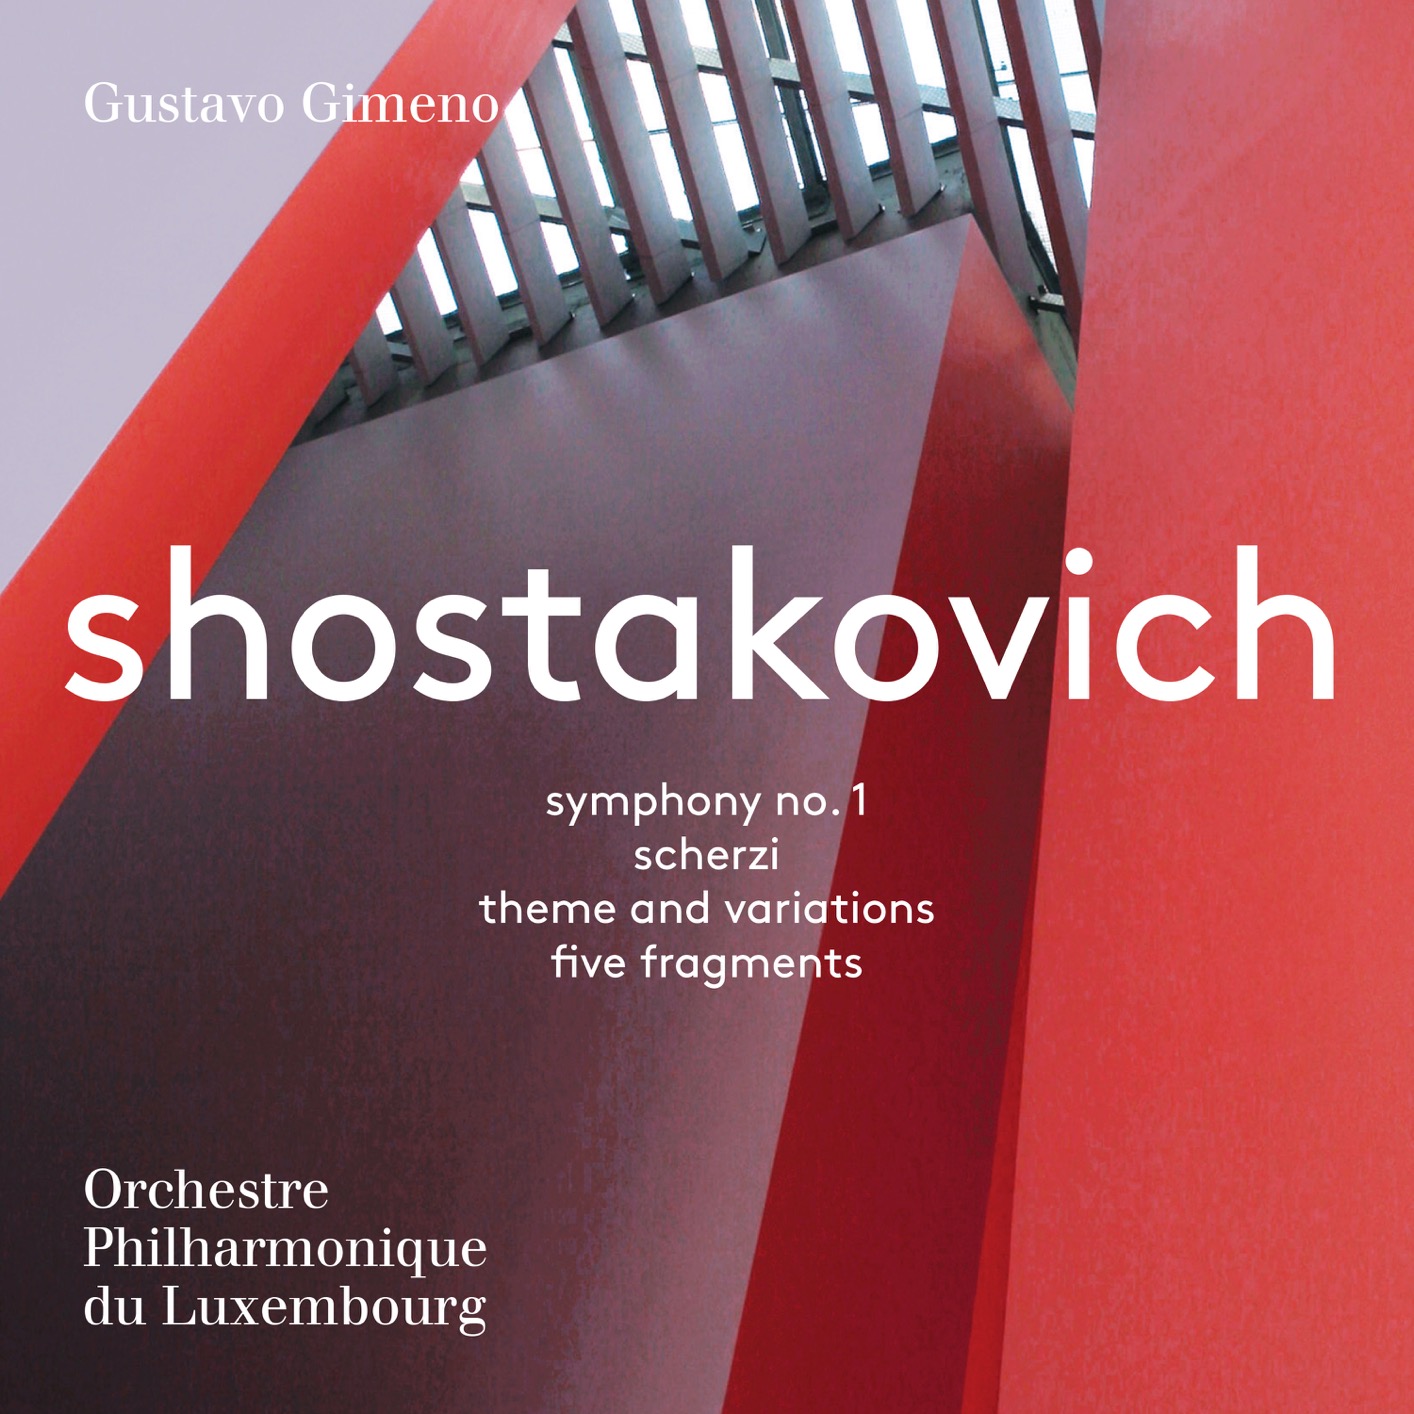 Gustavo Gimeno - Shostakovich: Symphony No. 1, Scherzi, Theme and Variations & 5 Fragments (2017) [FLAC 24bit/96kHz]